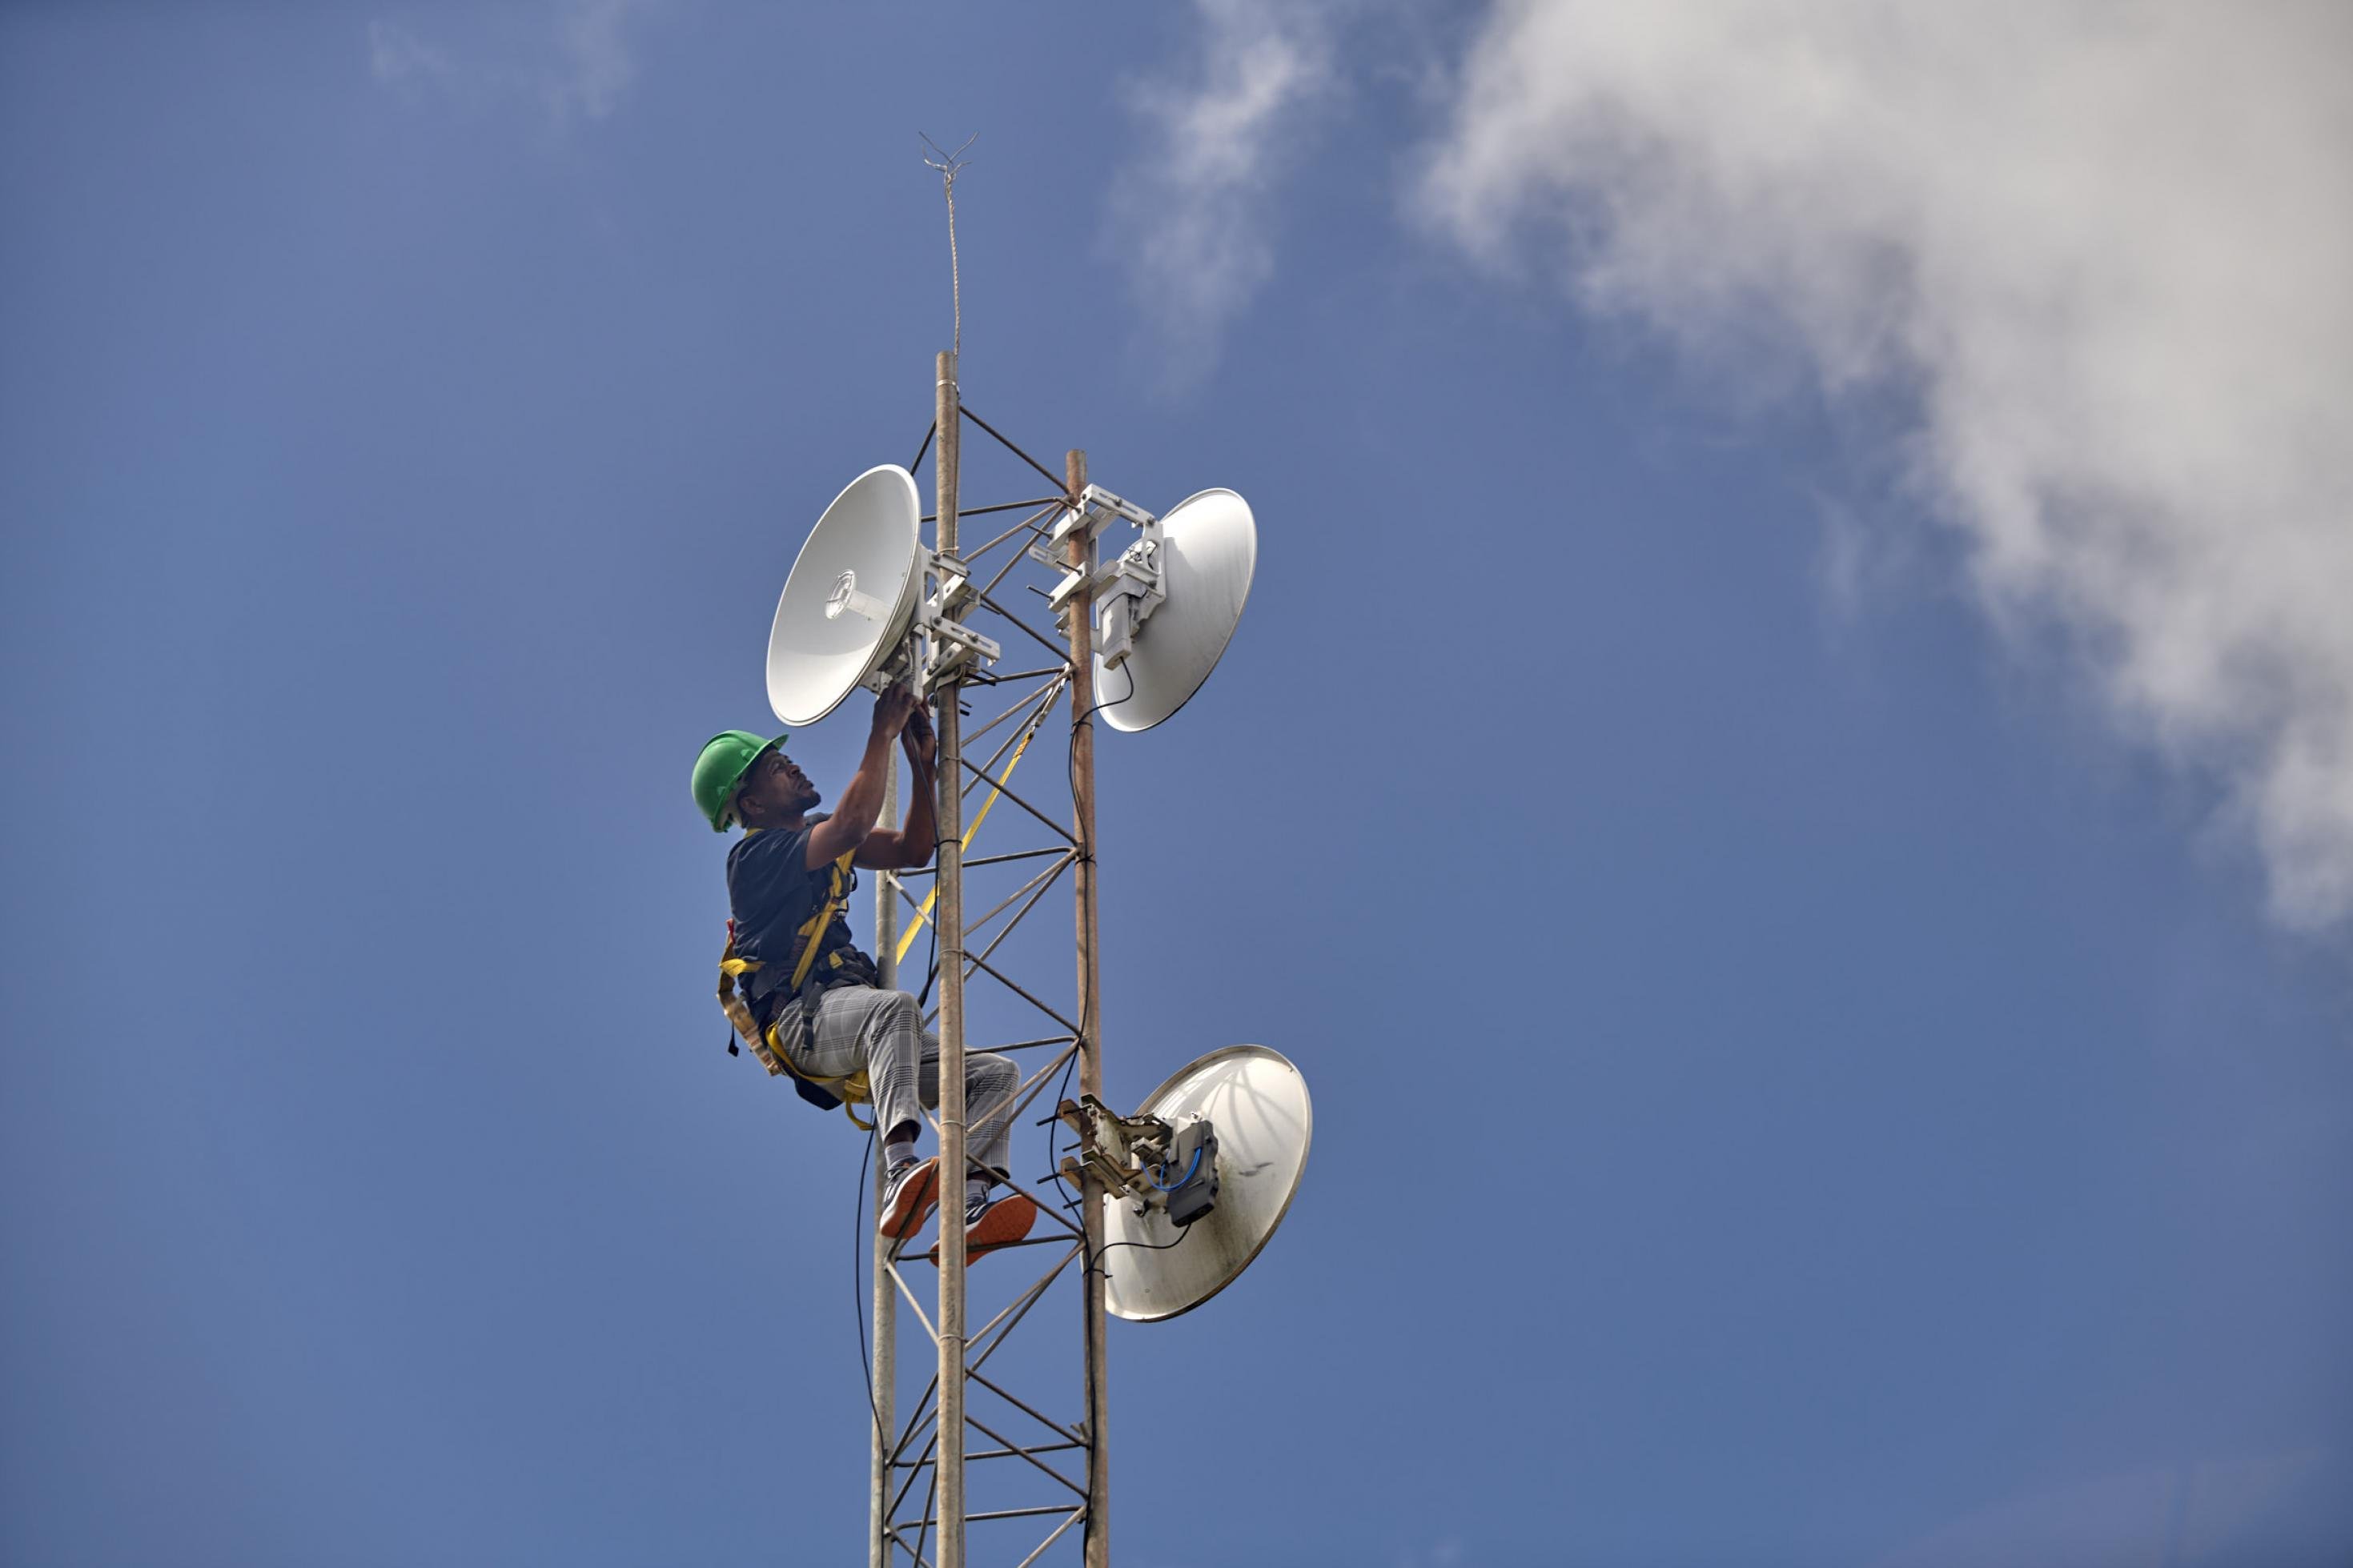 Auf dem Bild ist ein Techniker mit Helm zu sehen, der ganz oben auf einen Mast geklettert ist, der zum kommunalen Netzwerk in Mankosi gehört.